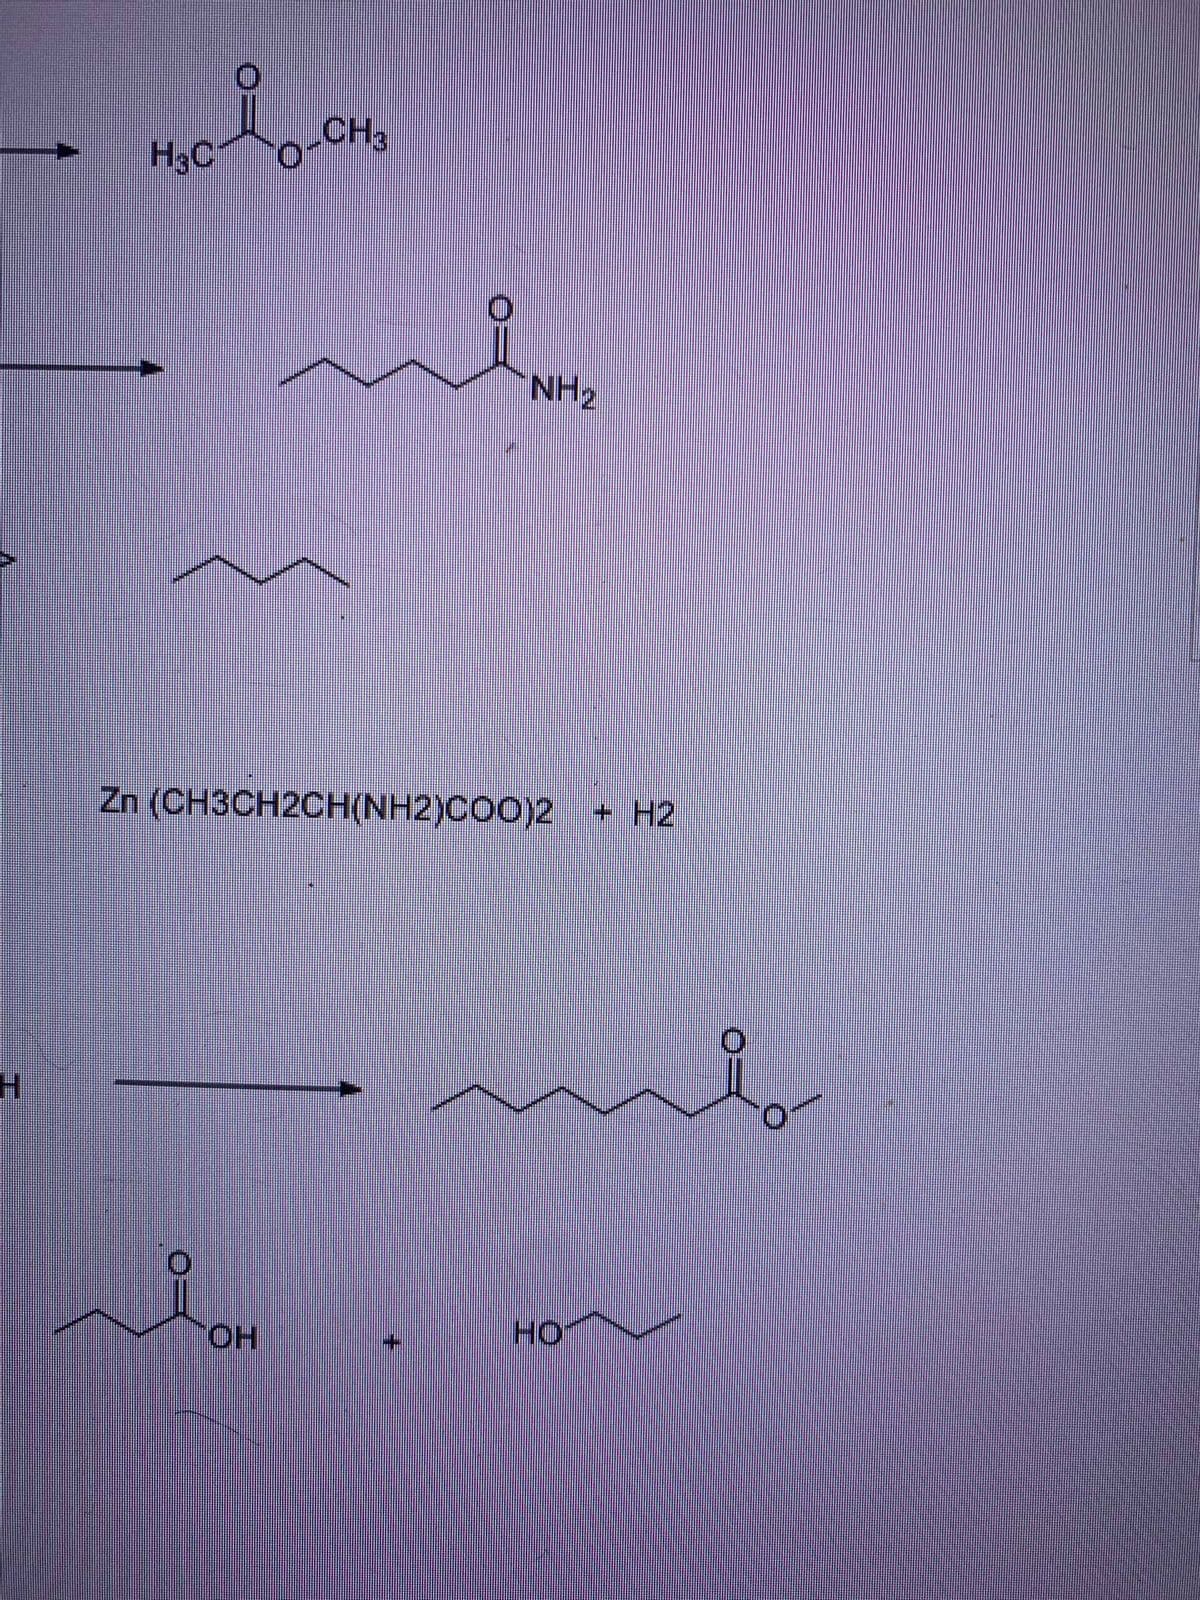 CH3
H3C
NH2
Zn (CH3CH2CH(NH2)COO)2
+ H2
HO
HO.
